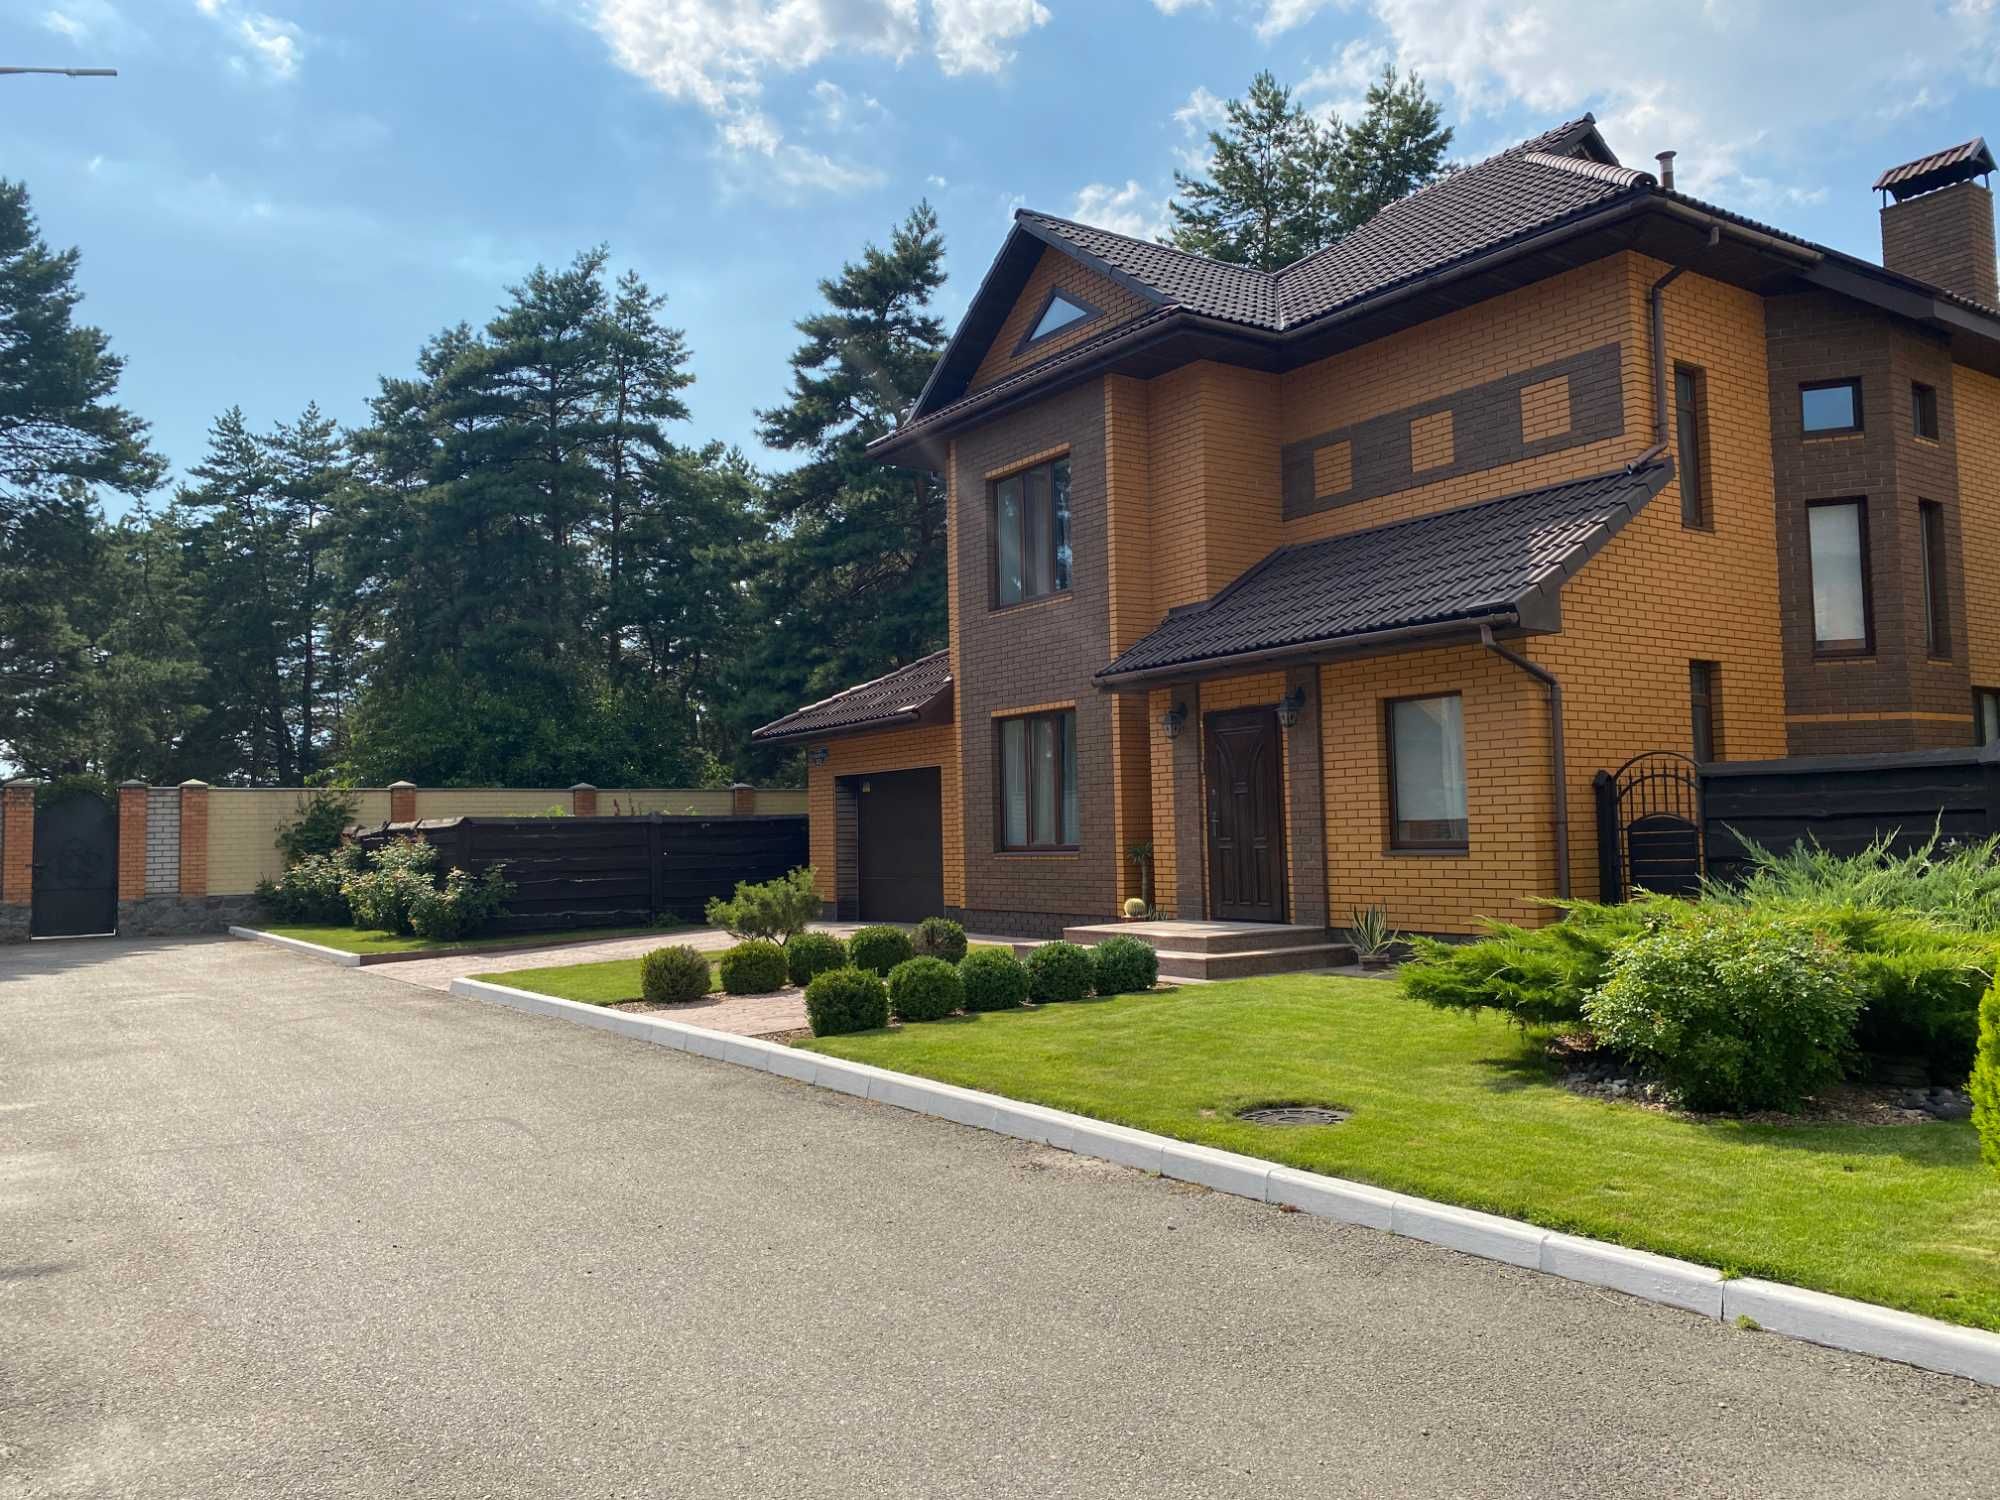 Продается дом в г. Горишние Плавни, Полтавской области, 171 кв.м.